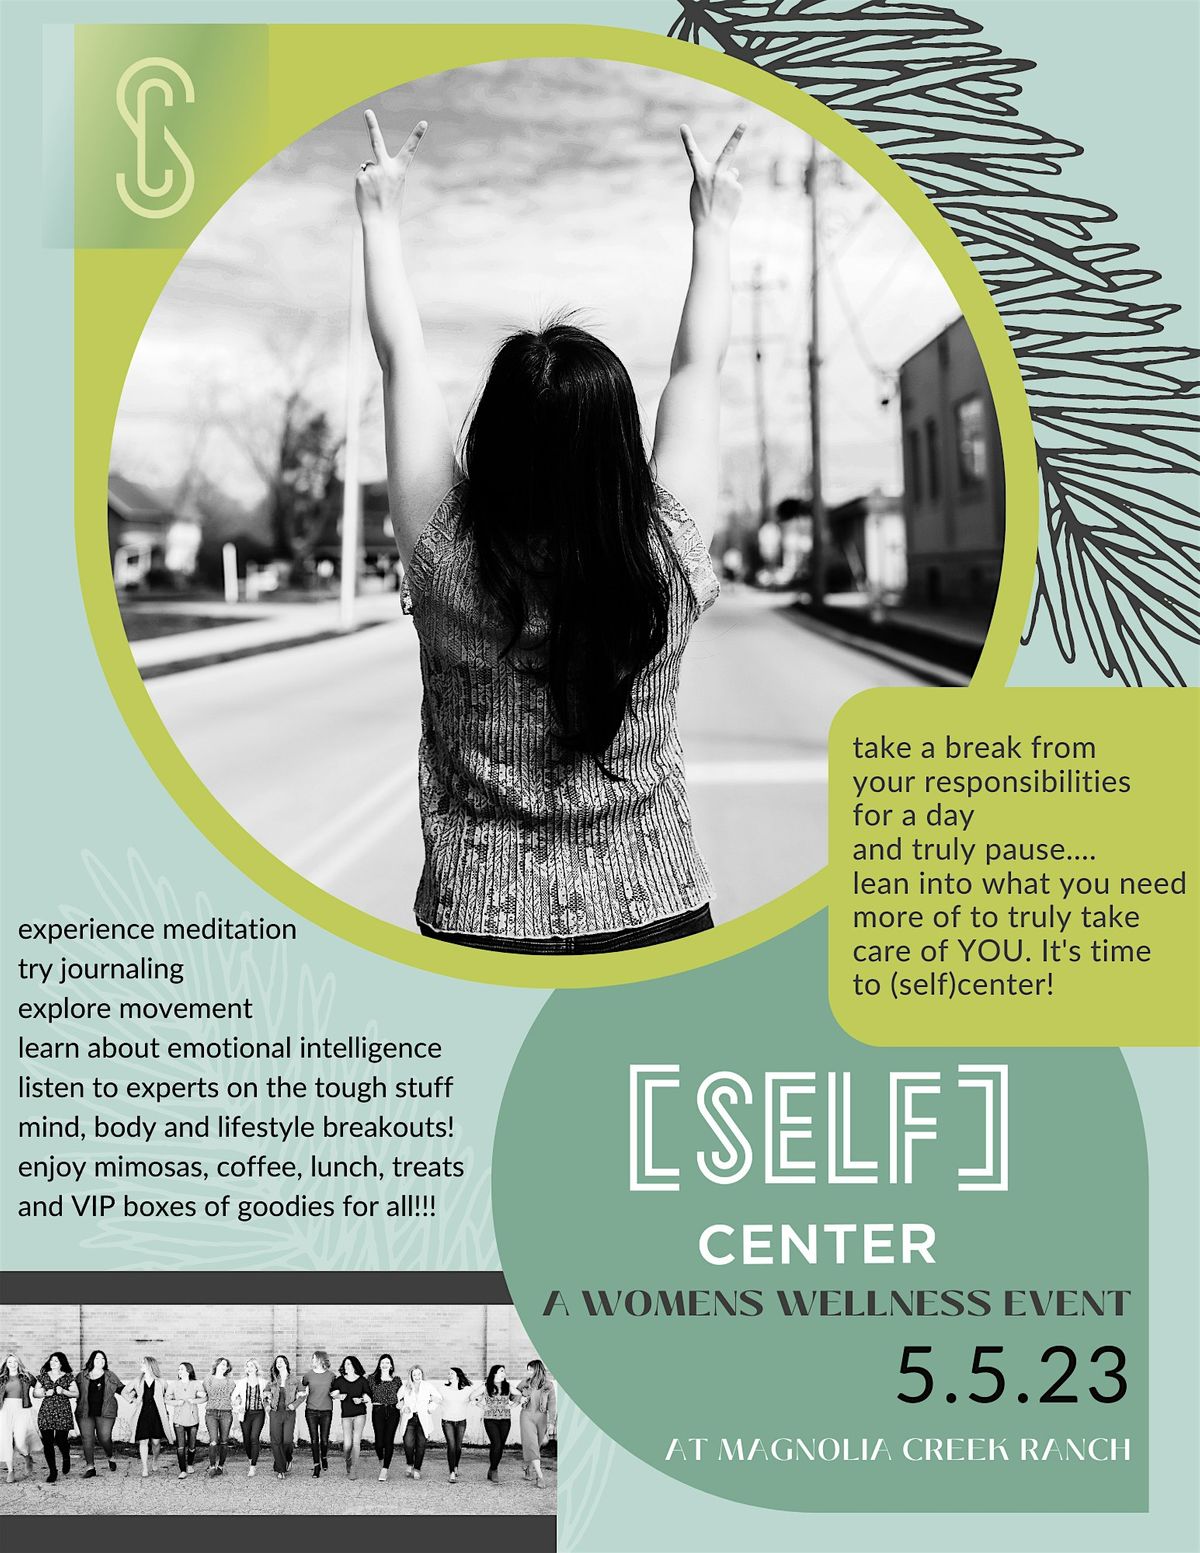 (self)center - a women's wellness event